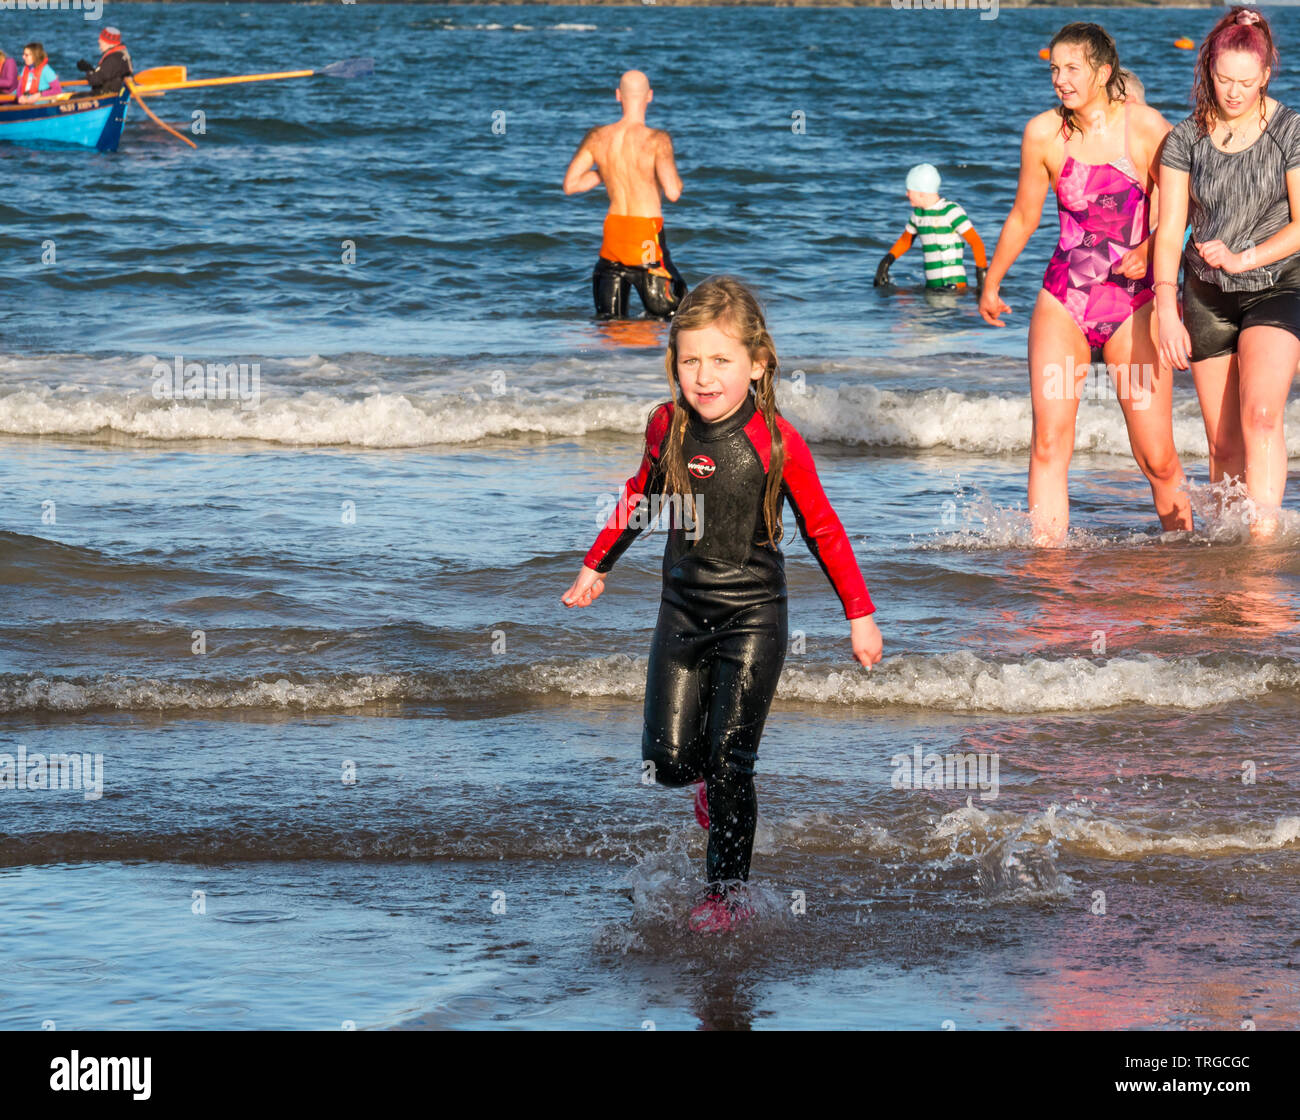 Loony Dook, primo giorno del nuovo anno: persone brave acqua fredda di West Bay, Firth of Forth, North Berwick, East Lothian, Scozia, Regno Unito. Giovane ragazza muta in Foto Stock